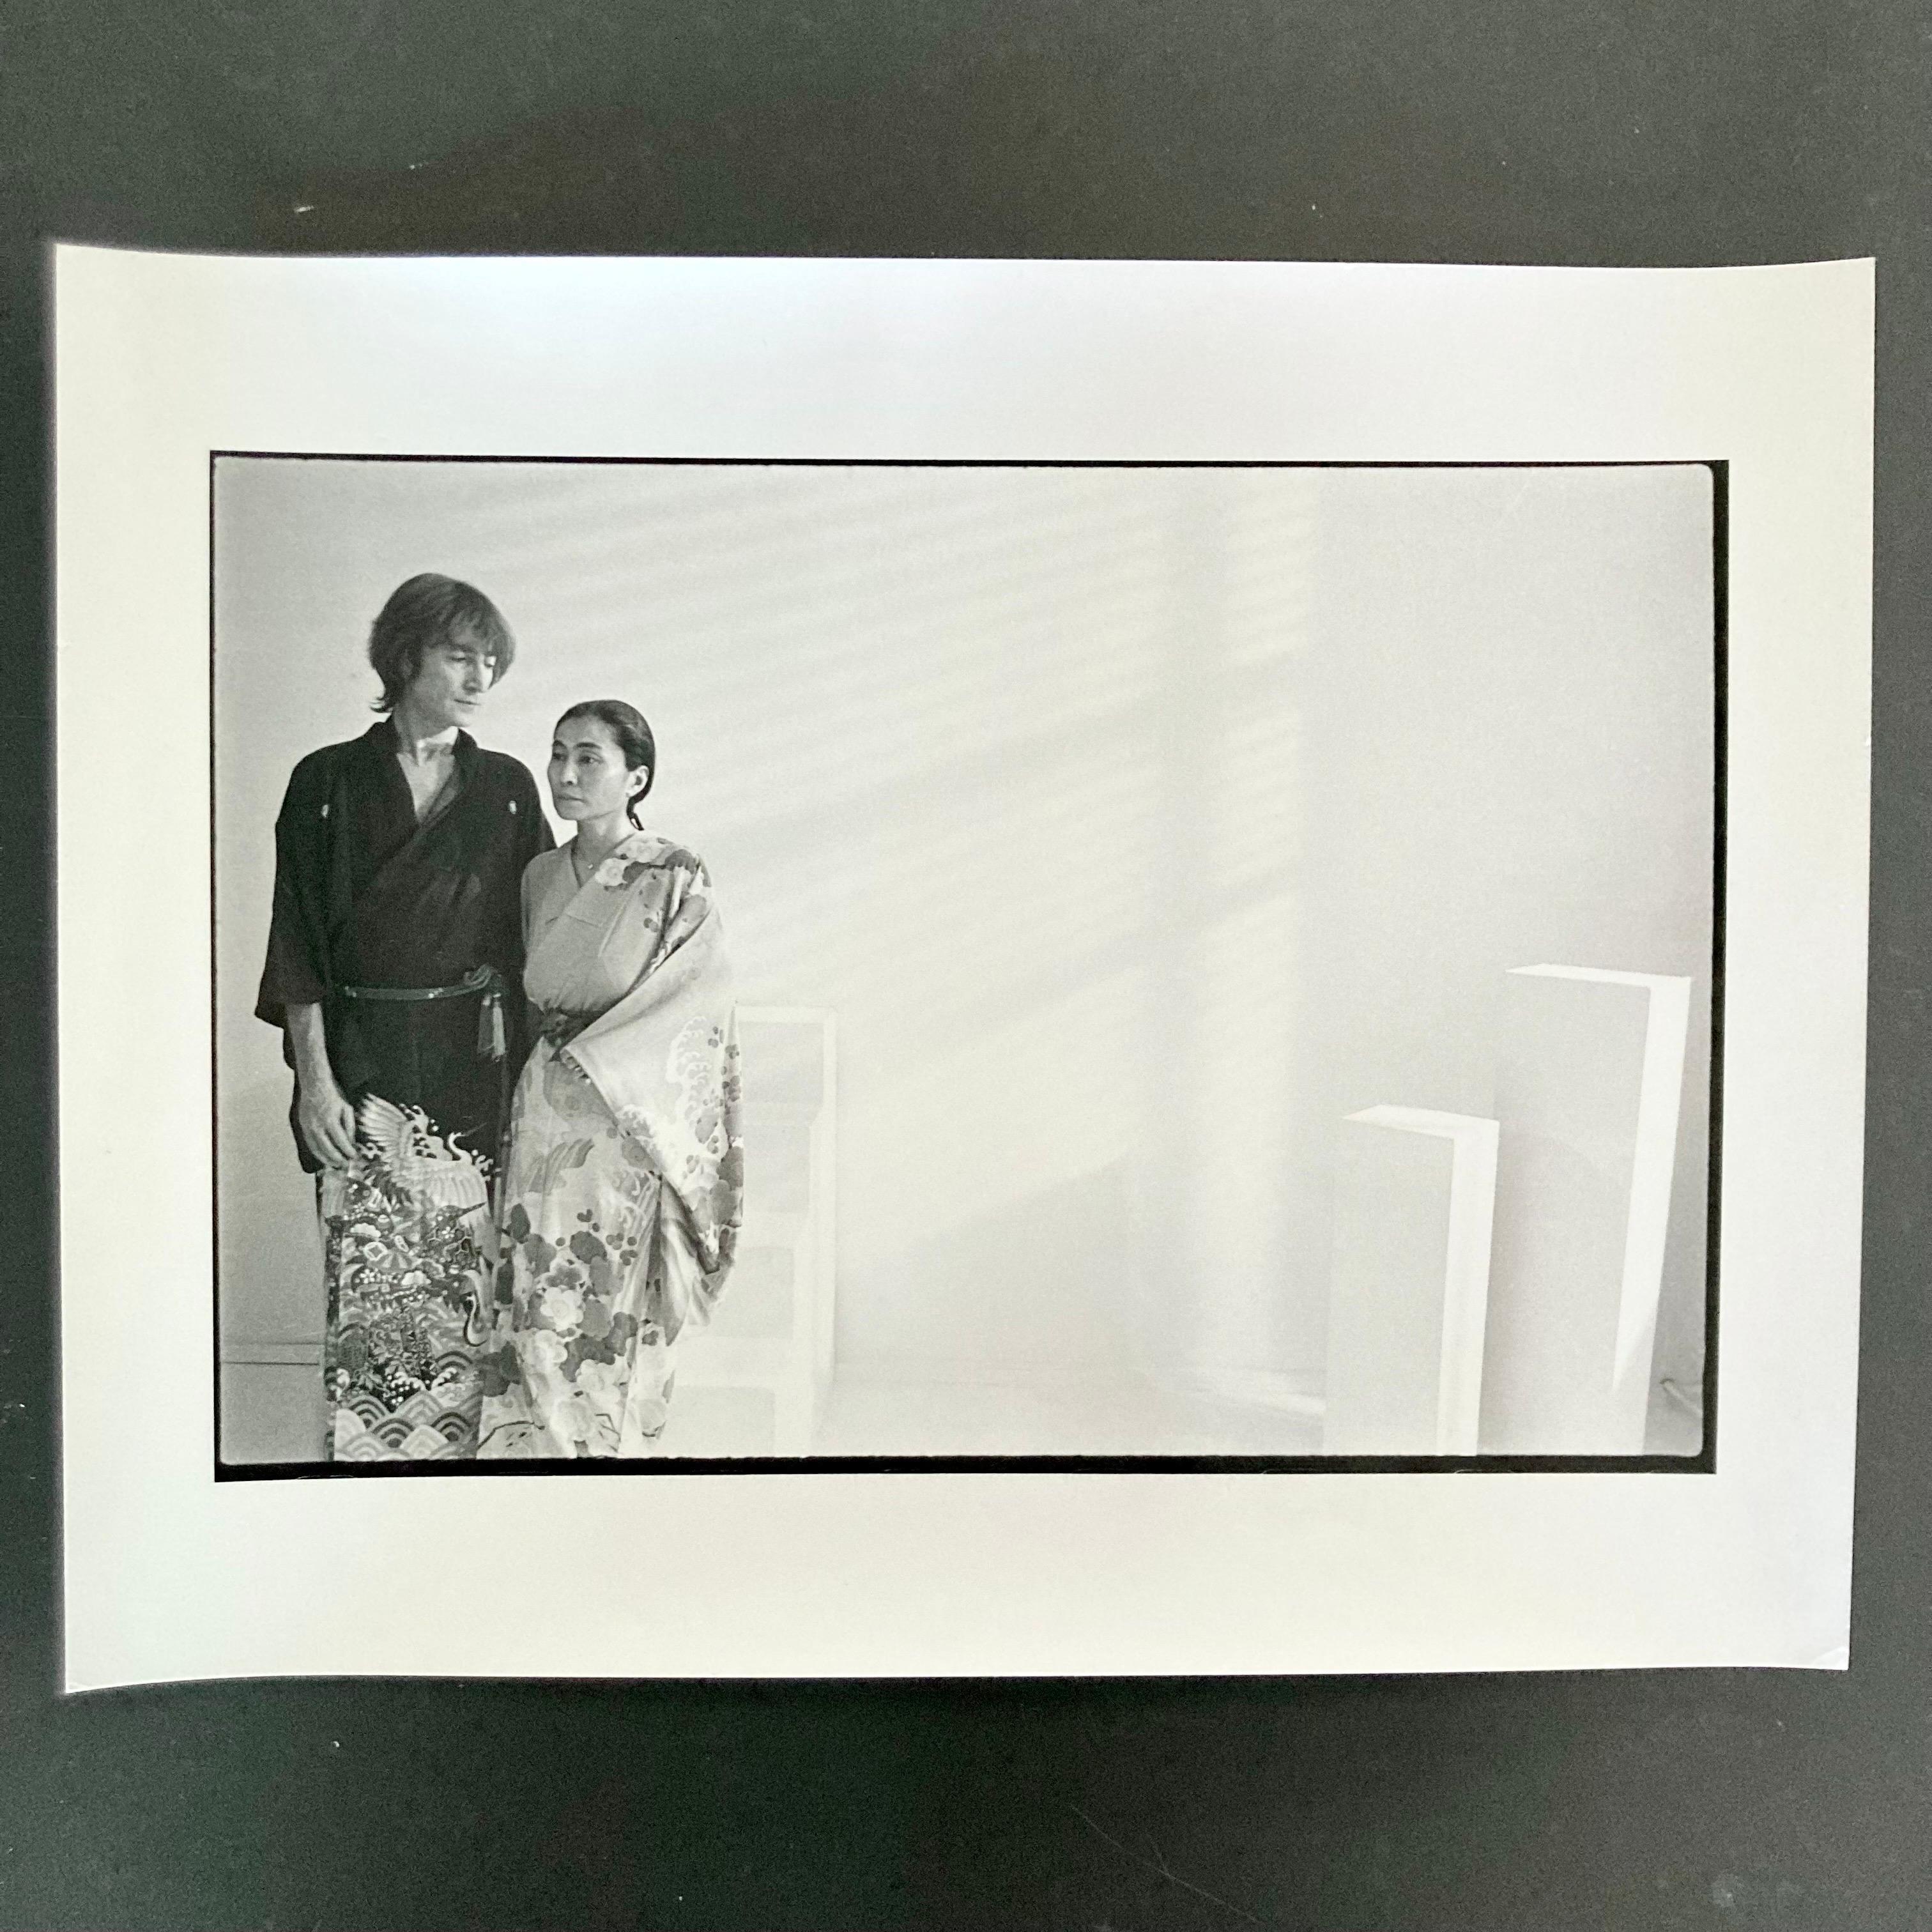 Vintage Dunkelkammerabzug von John Lennon und Yoko Ono, aufgenommen in New York am Set von "Starting Over" am 26. November 1980. Dieser Druck ist ein originaler, handgedruckter Dunkelkammerabzug des Fotografen Allan Tannenbaum. 

Dieser 11x14" große